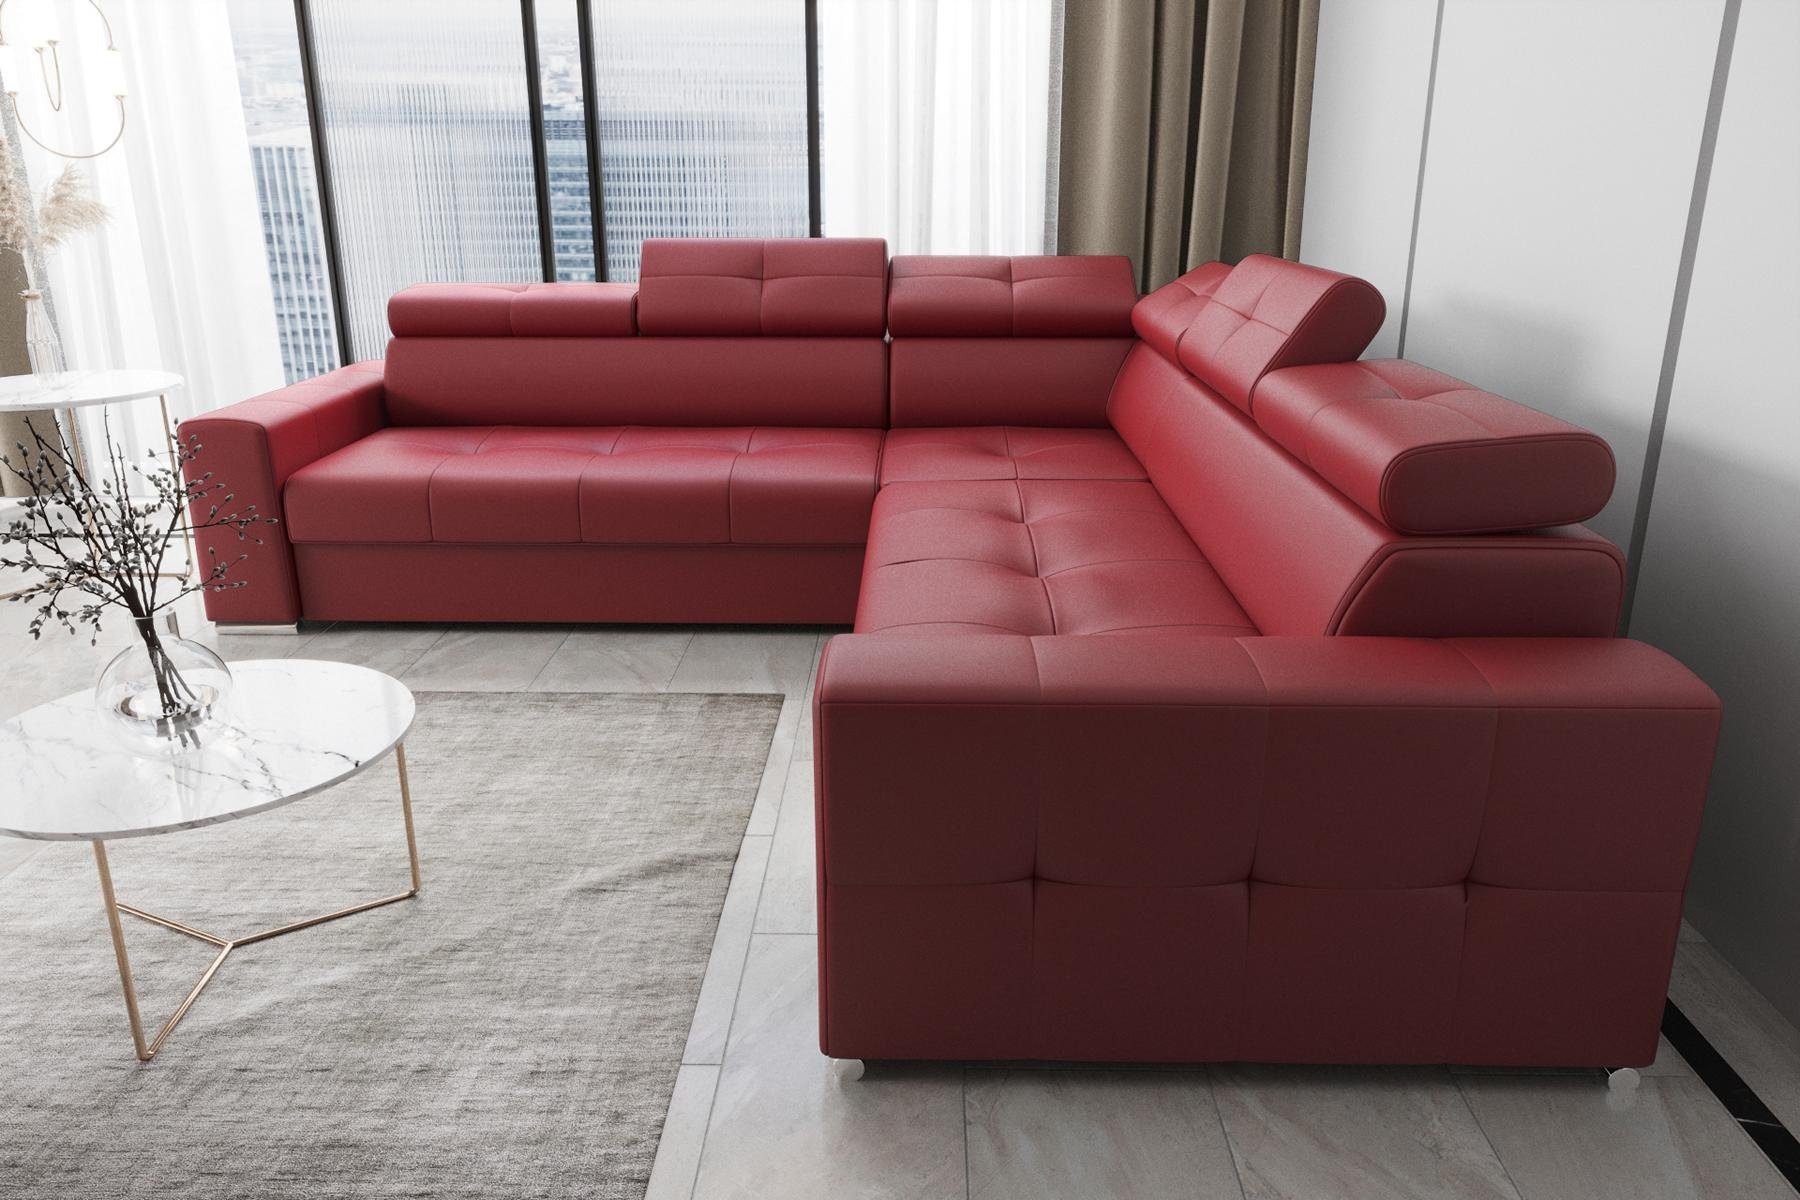 JVmoebel Ecksofa Wohnzimmer Textil Leder Luxus L Form Modern Ecksofa Couch, Made in Europe Rot